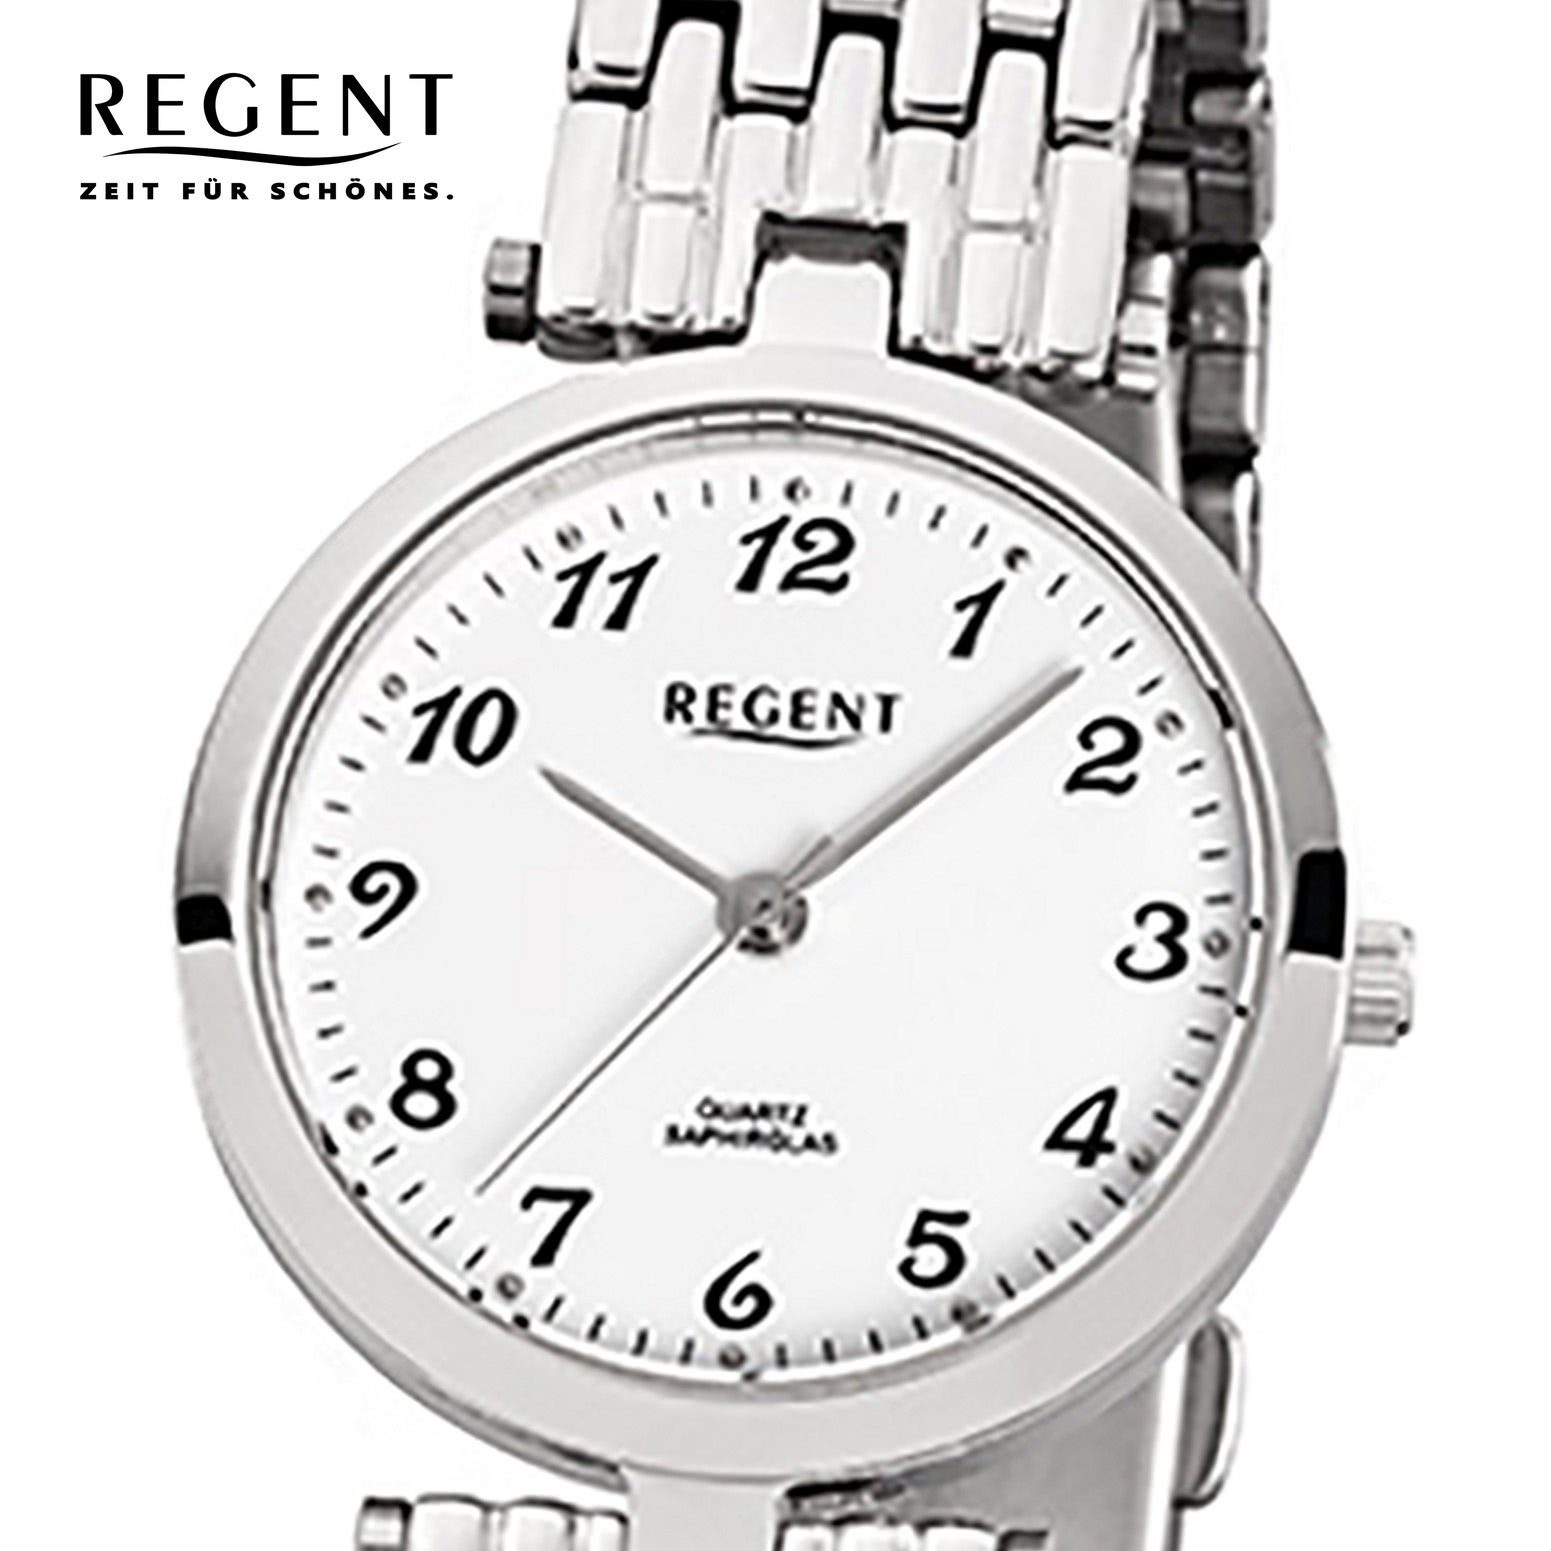 Regent Quarzuhr Damen F-908, silber (ca. rund, Armbanduhr Regent Analog Damen-Armbanduhr klein 28mm), Edelstahlarmband